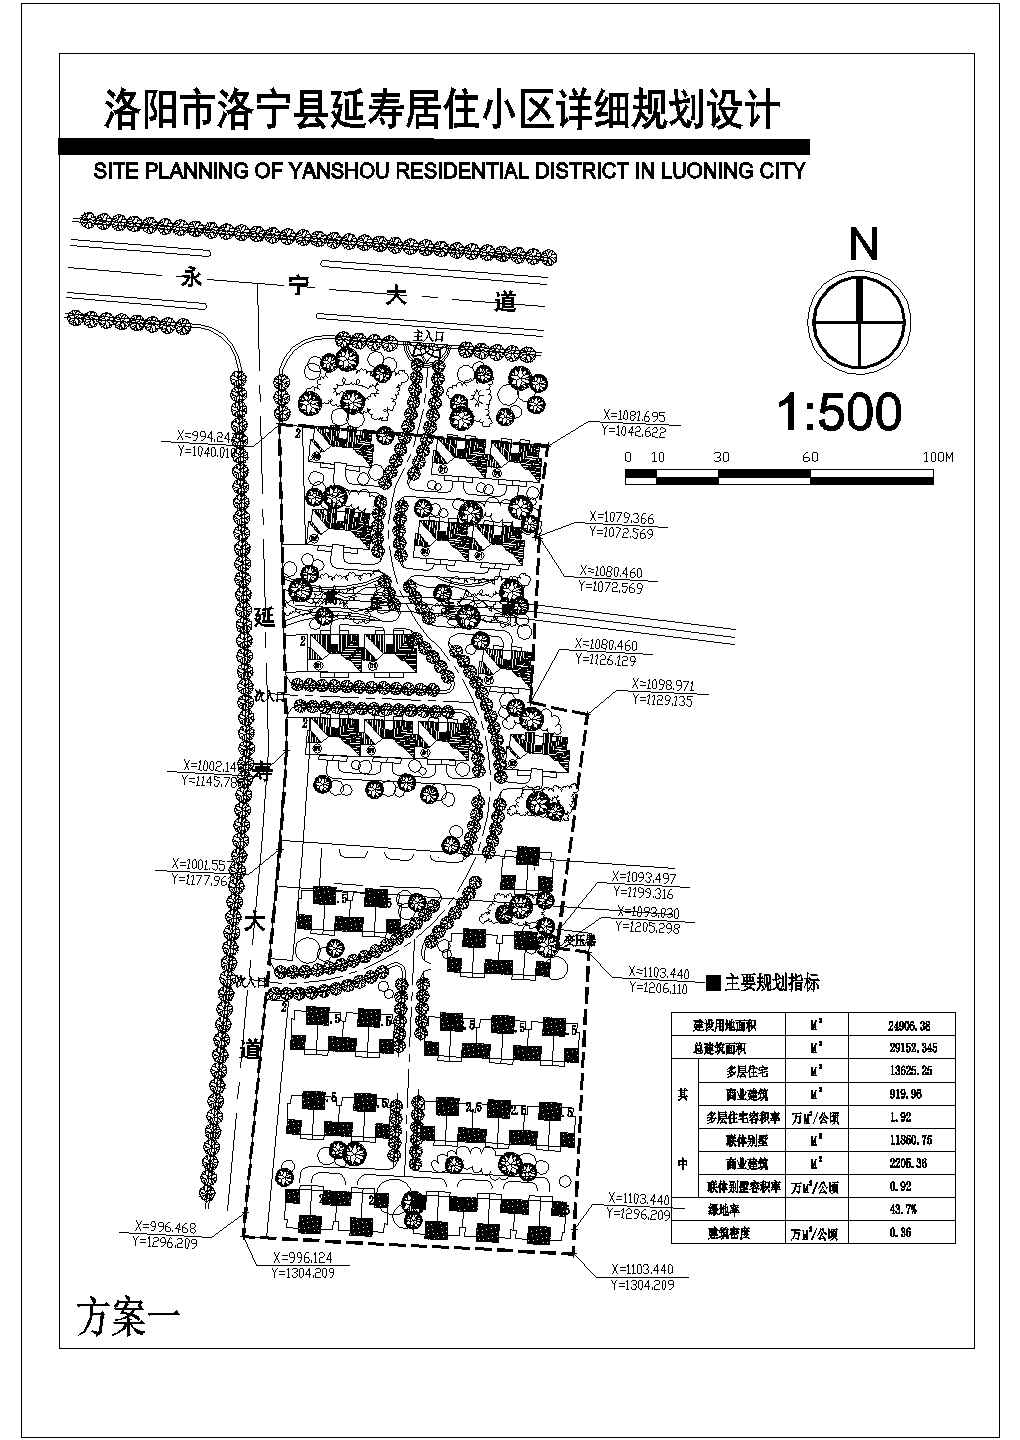 建设用地24906.38平米某县居住小区详细规划设计总平面2个方案cad